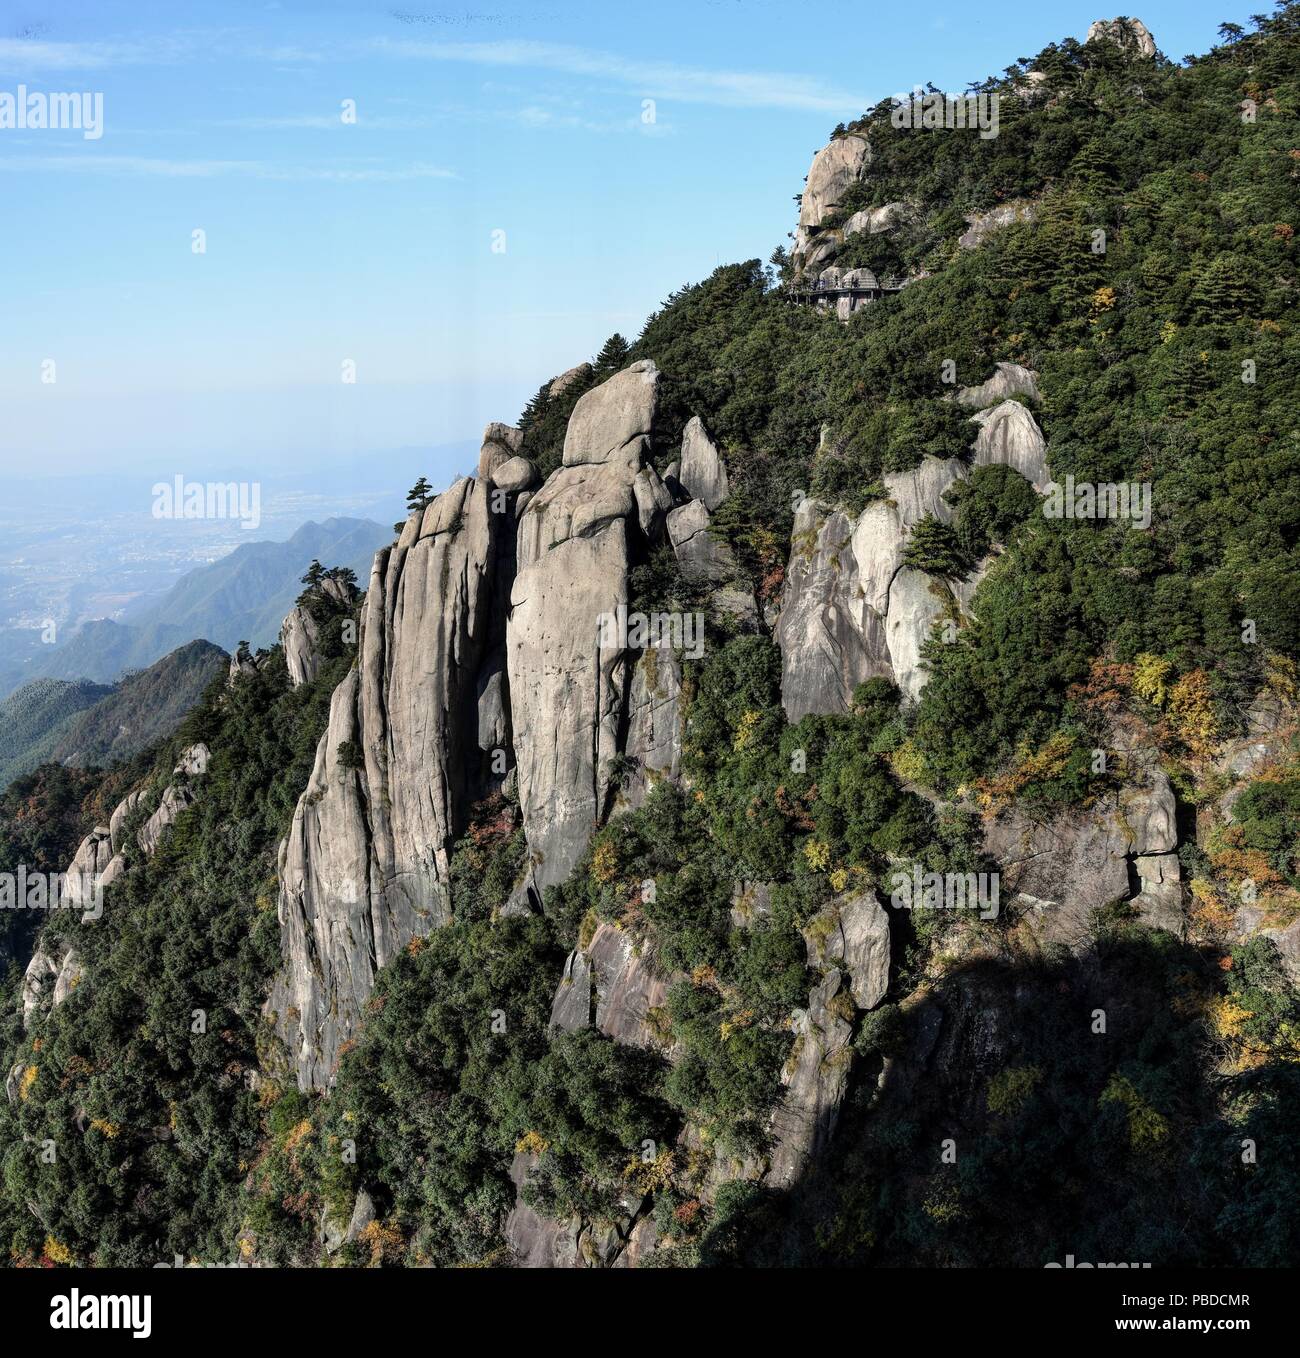 Un sideway alta sul Monte Jiuhua, nove Montagne incantate, uno dei quattro monti sacri del Buddismo cinese nella provincia di Anhui in Cina. Foto Stock